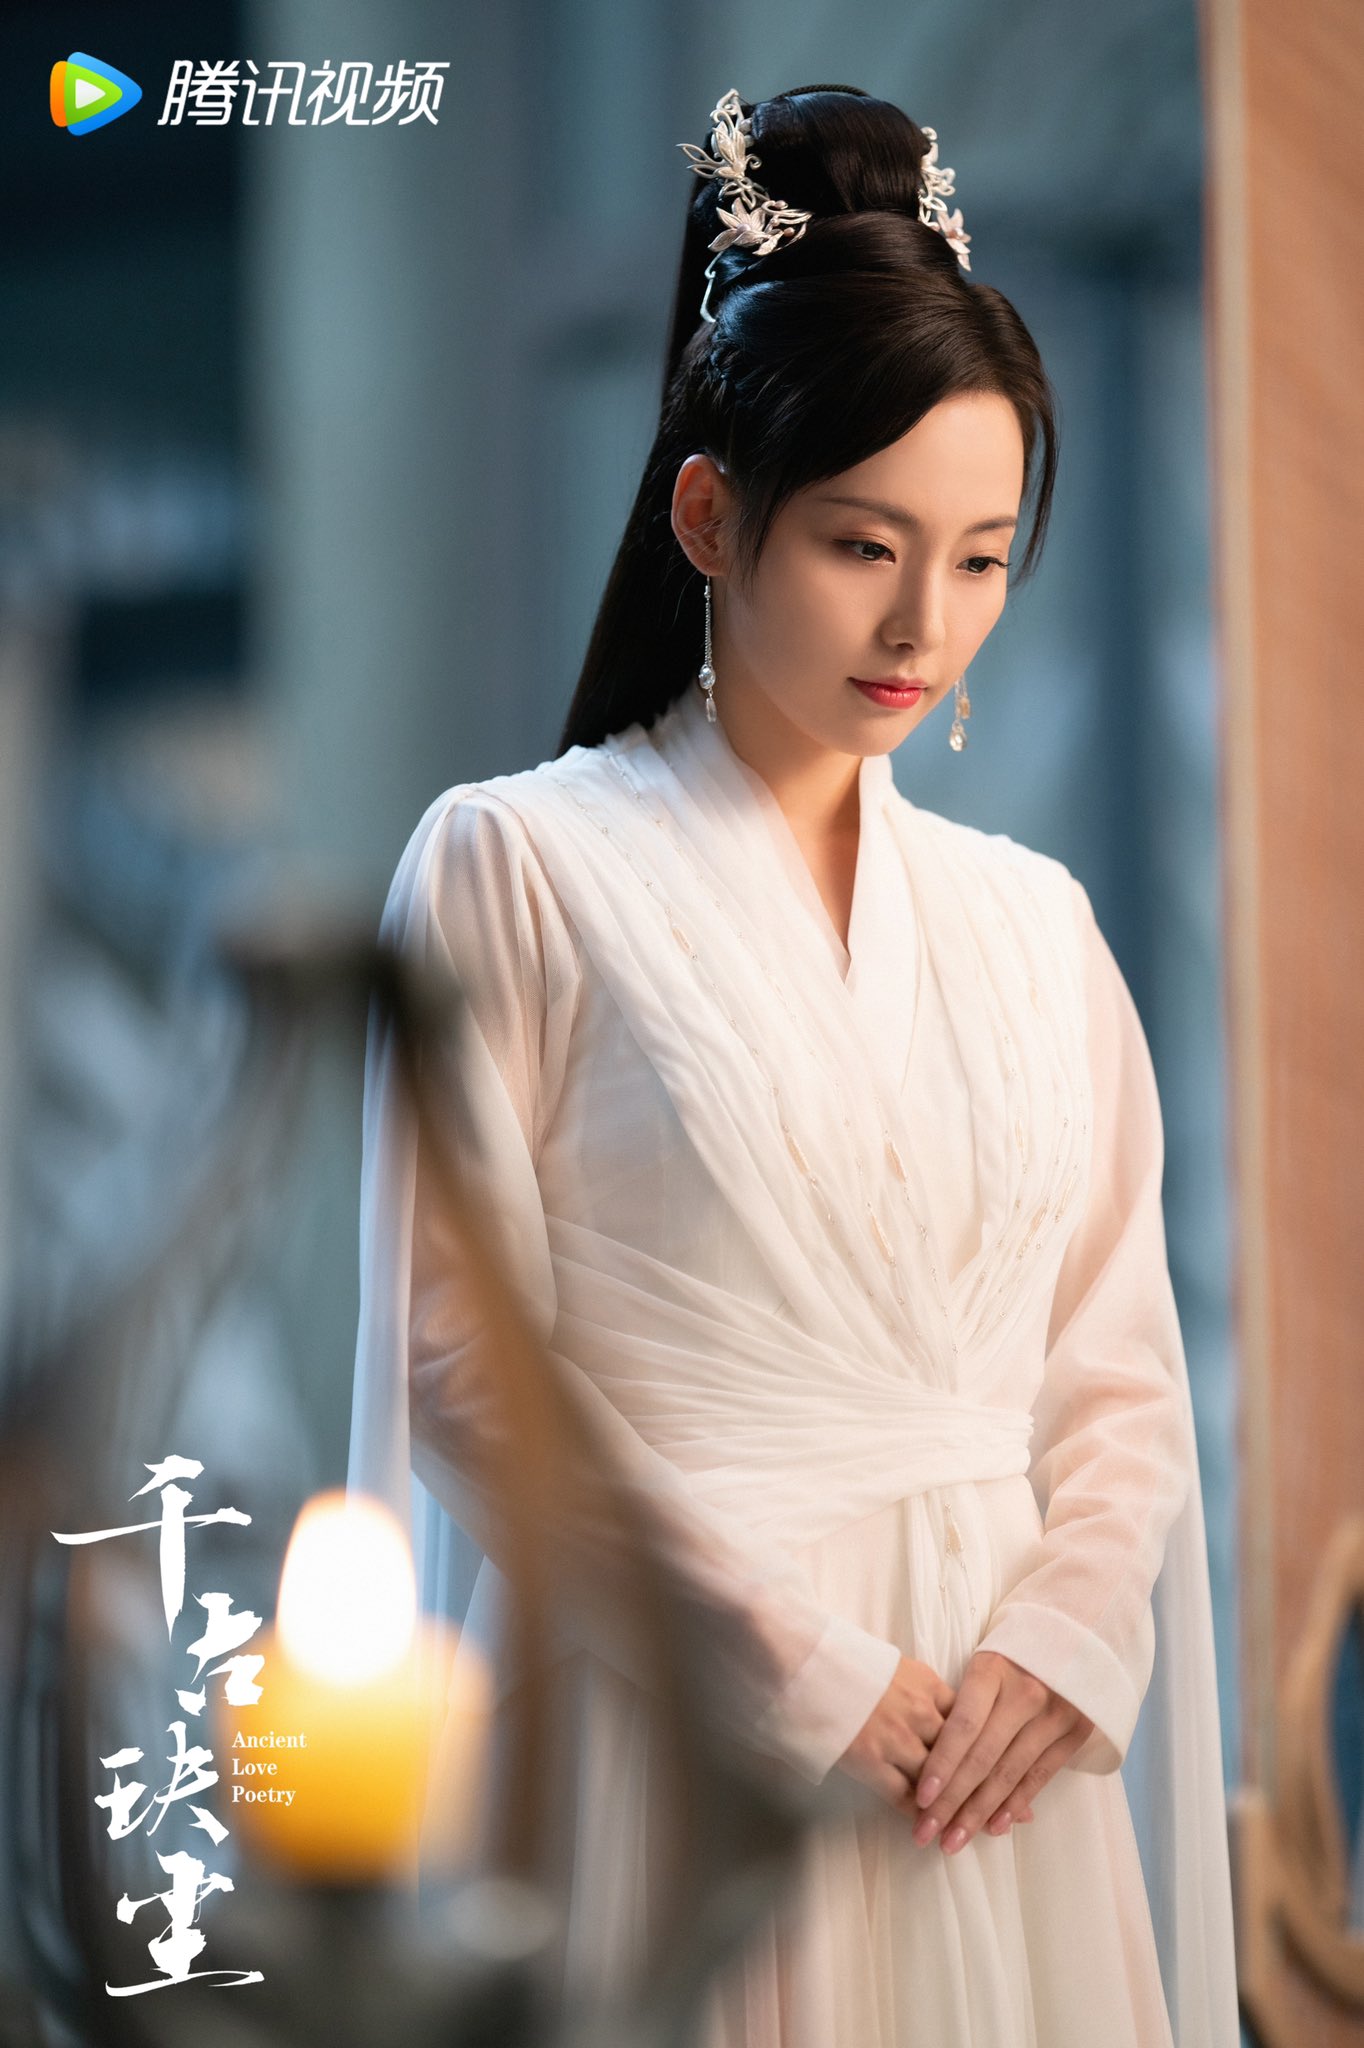 dramapotatoe backup on X: Xianxia romance #AncientLovePoetry, starring Zhou  Dongyu, Xu Kai, Liu Xueyi, Li Zefeng, Lai Yi, Luo Qiuyun, Fu Xinbo (special  appearance), and more, releases new stills as it premiered